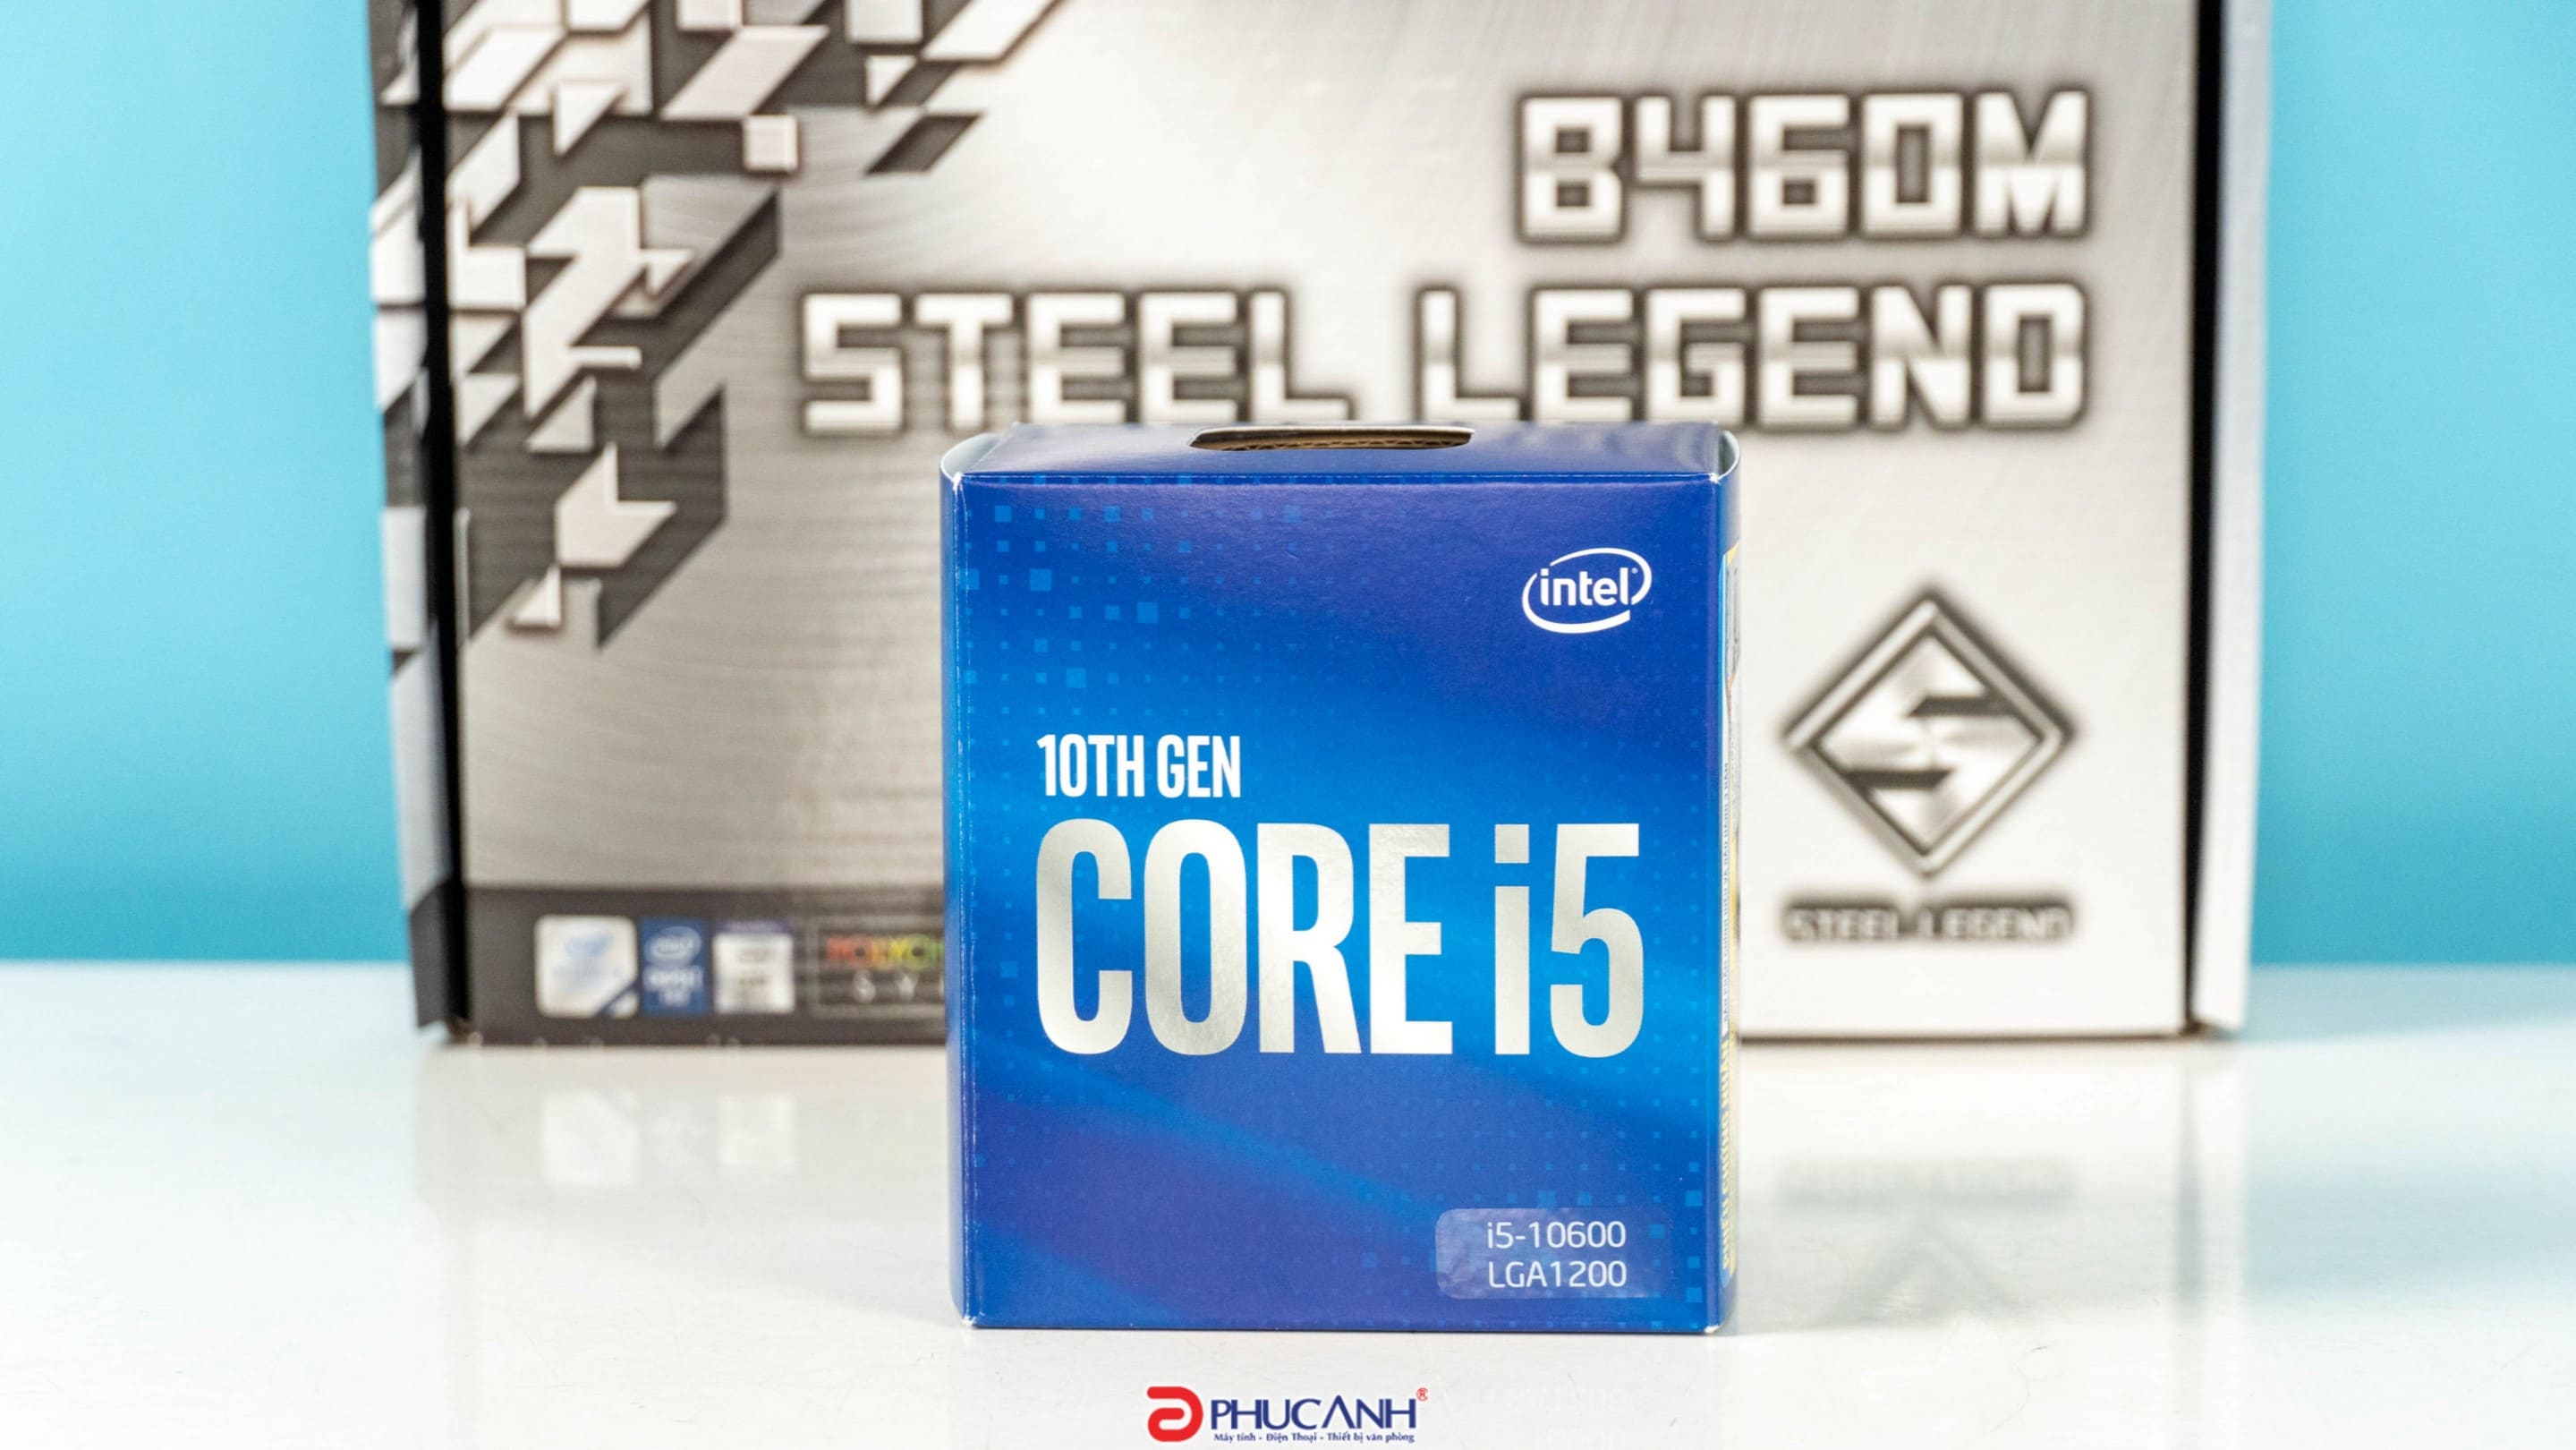 các thông tin về Intel Core I5 10600 và Asrock B460M Steel Legend